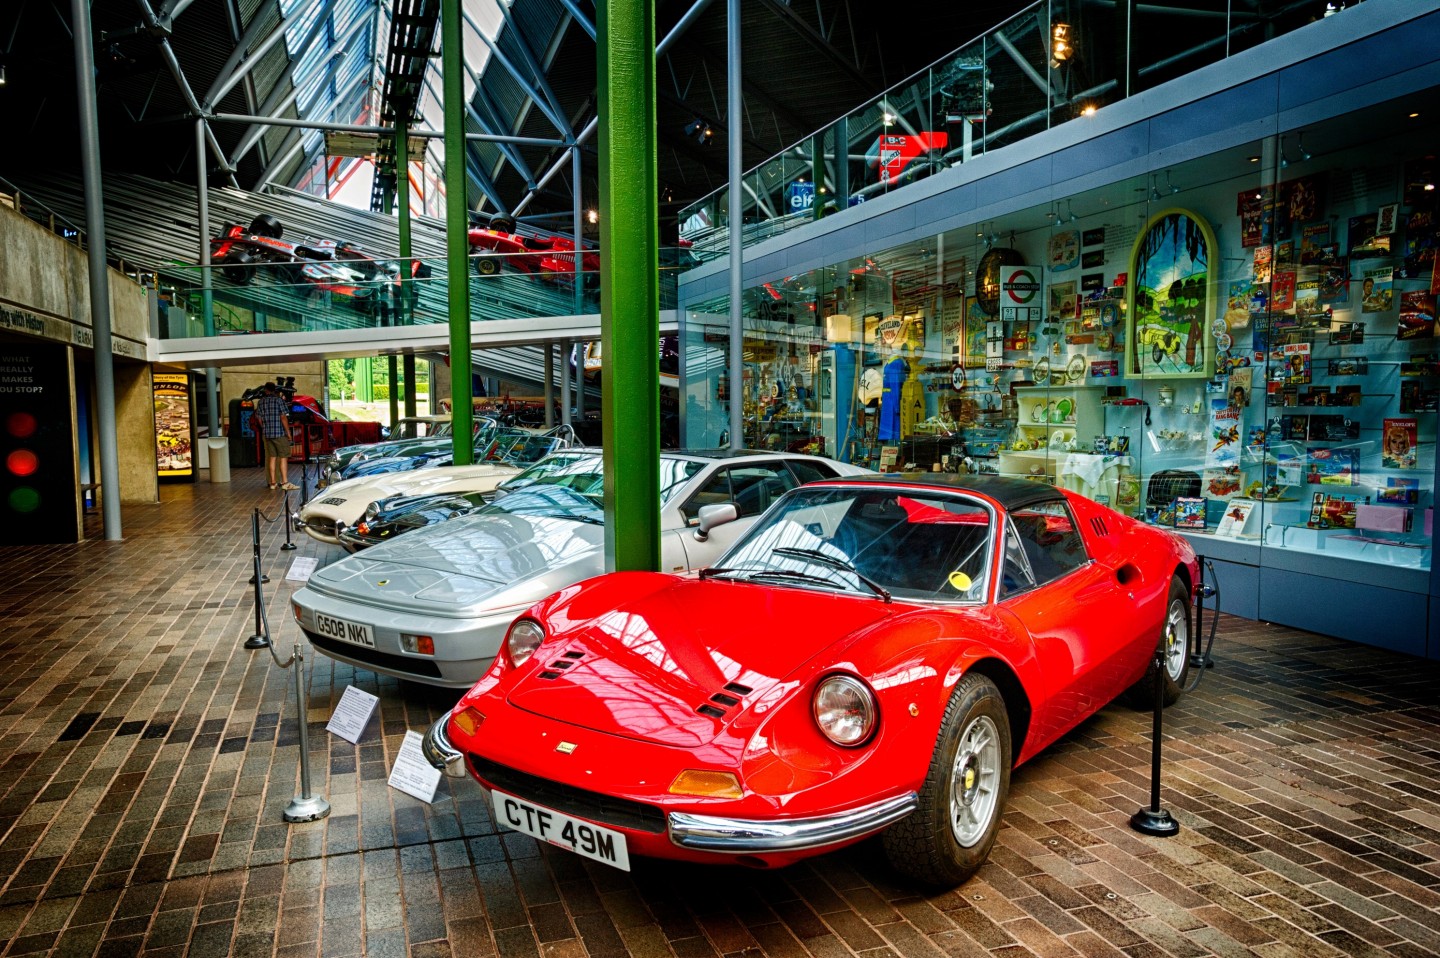 National Motor Museum, Beaulieu, Hampshire - Cars in the National Motor Museum, Beaulieu